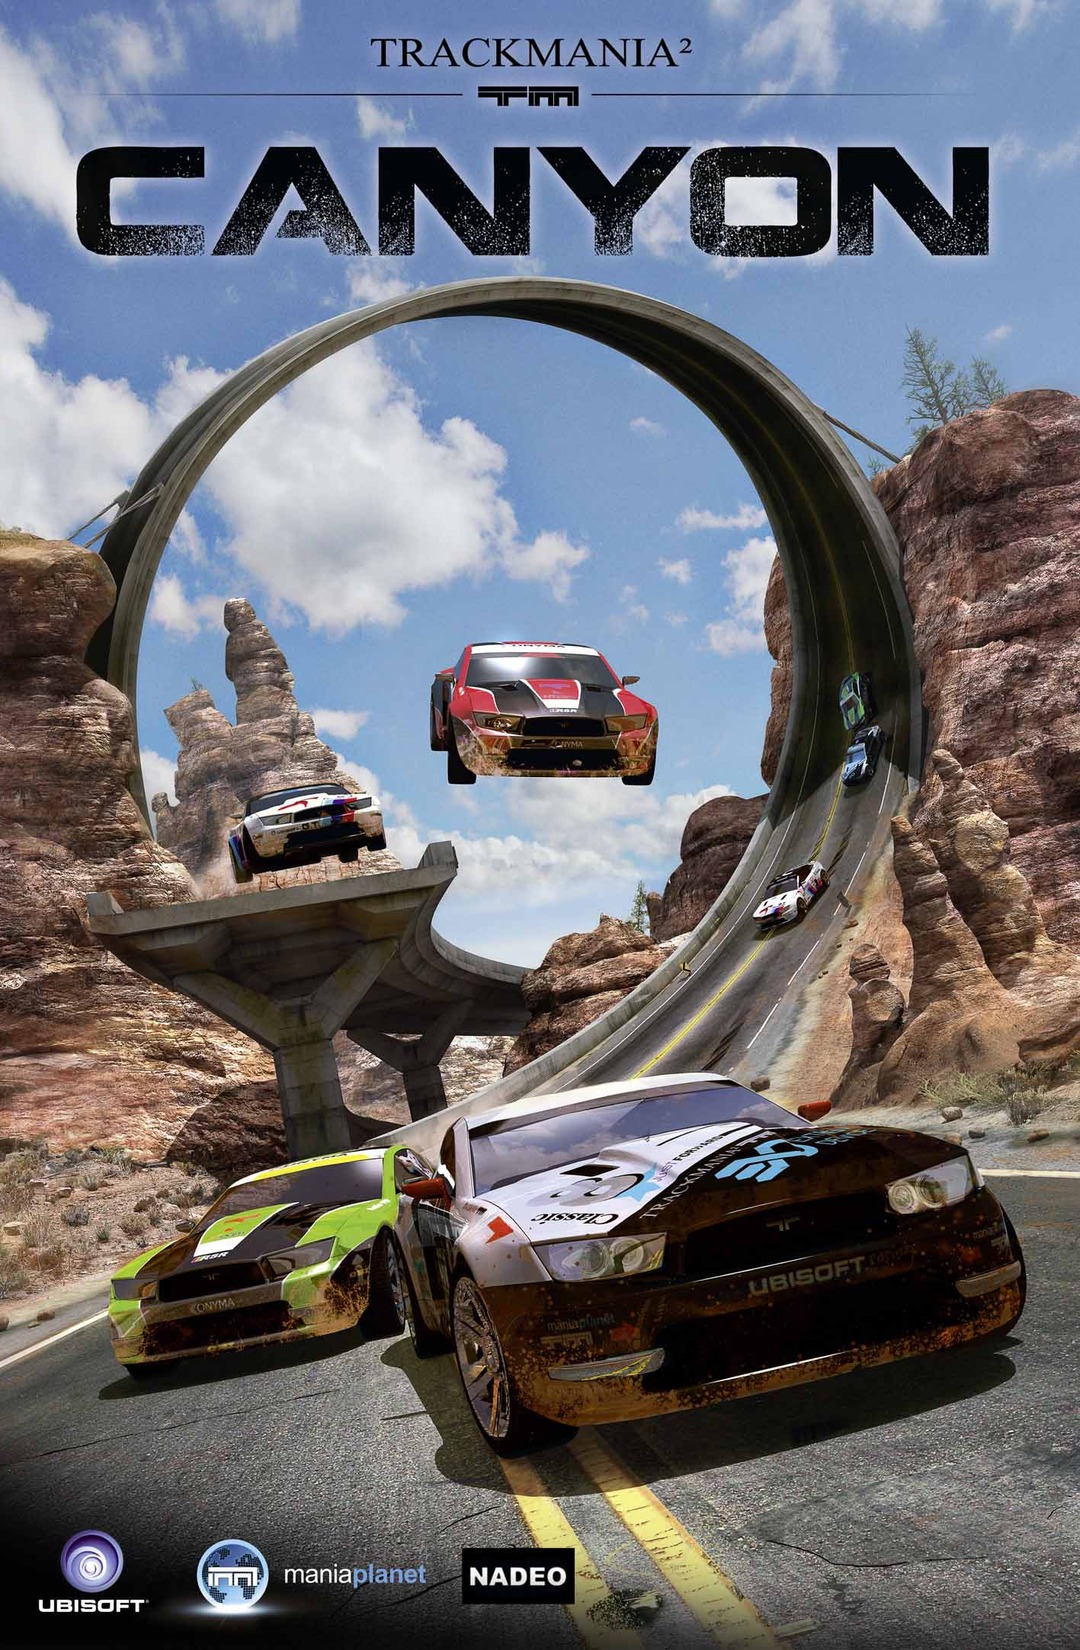 jaquette du jeu vidéo TrackMania² : Canyon